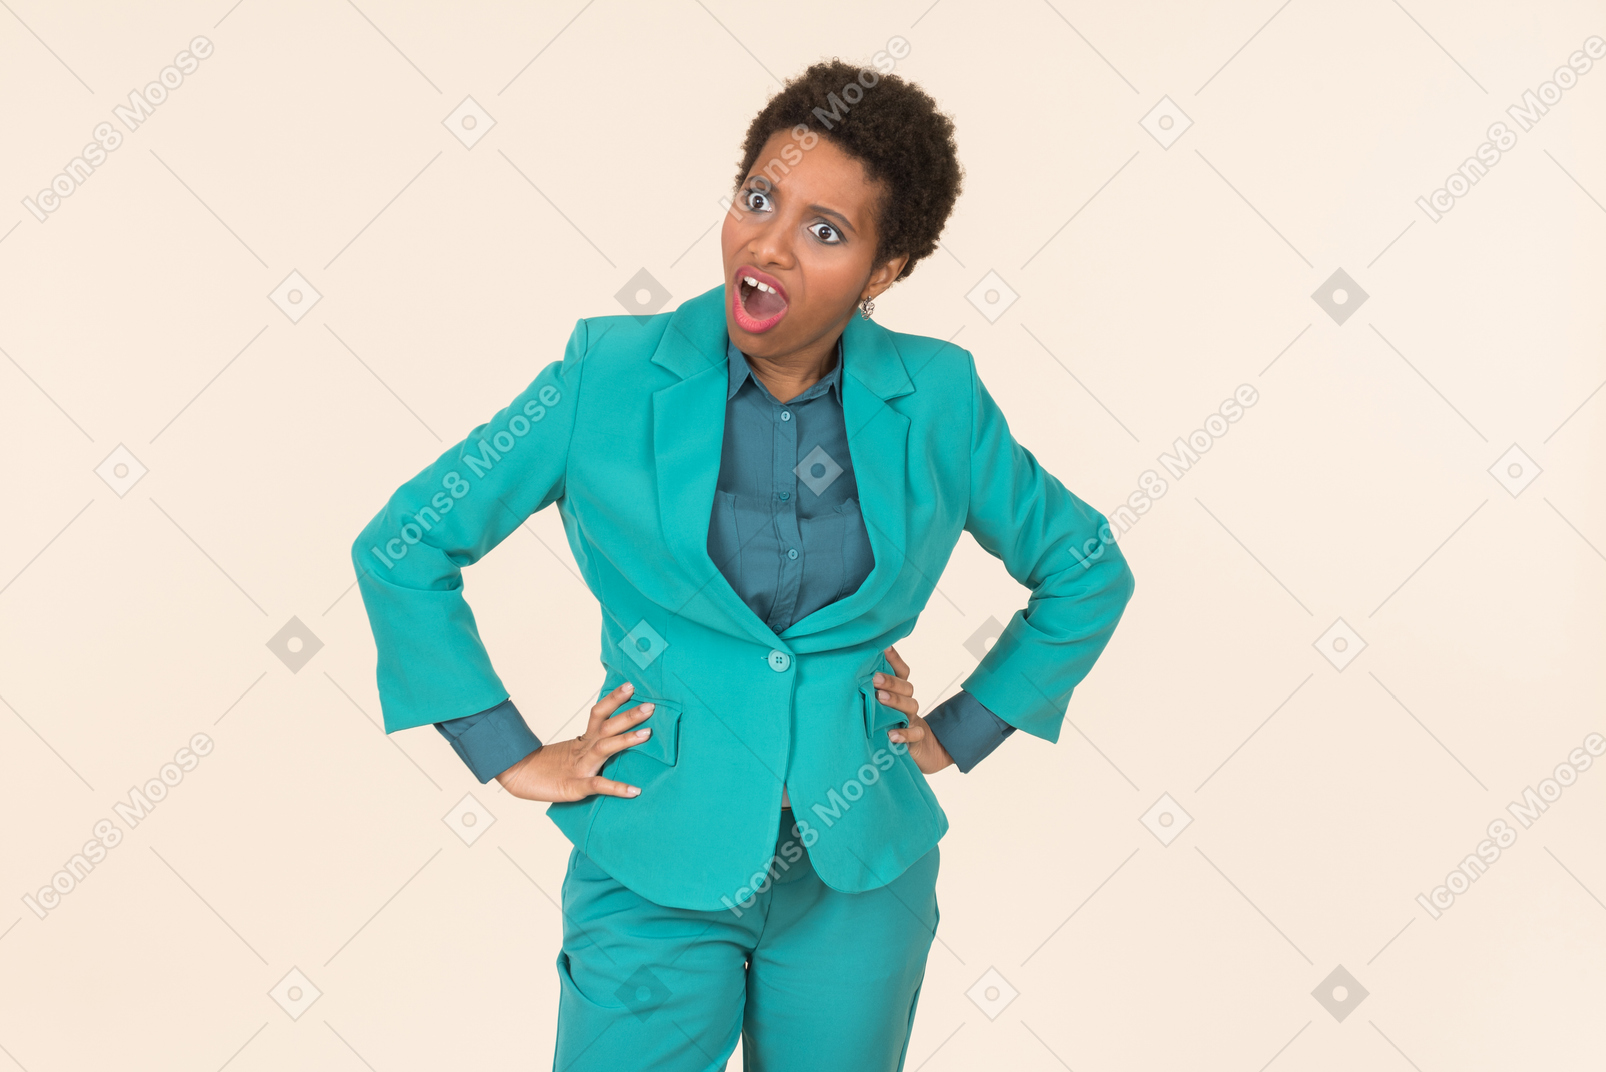 Негритянка с короткой стрижкой, одетая во все синие, стоящая на простом пастельном фоне, выглядящая эмоционально